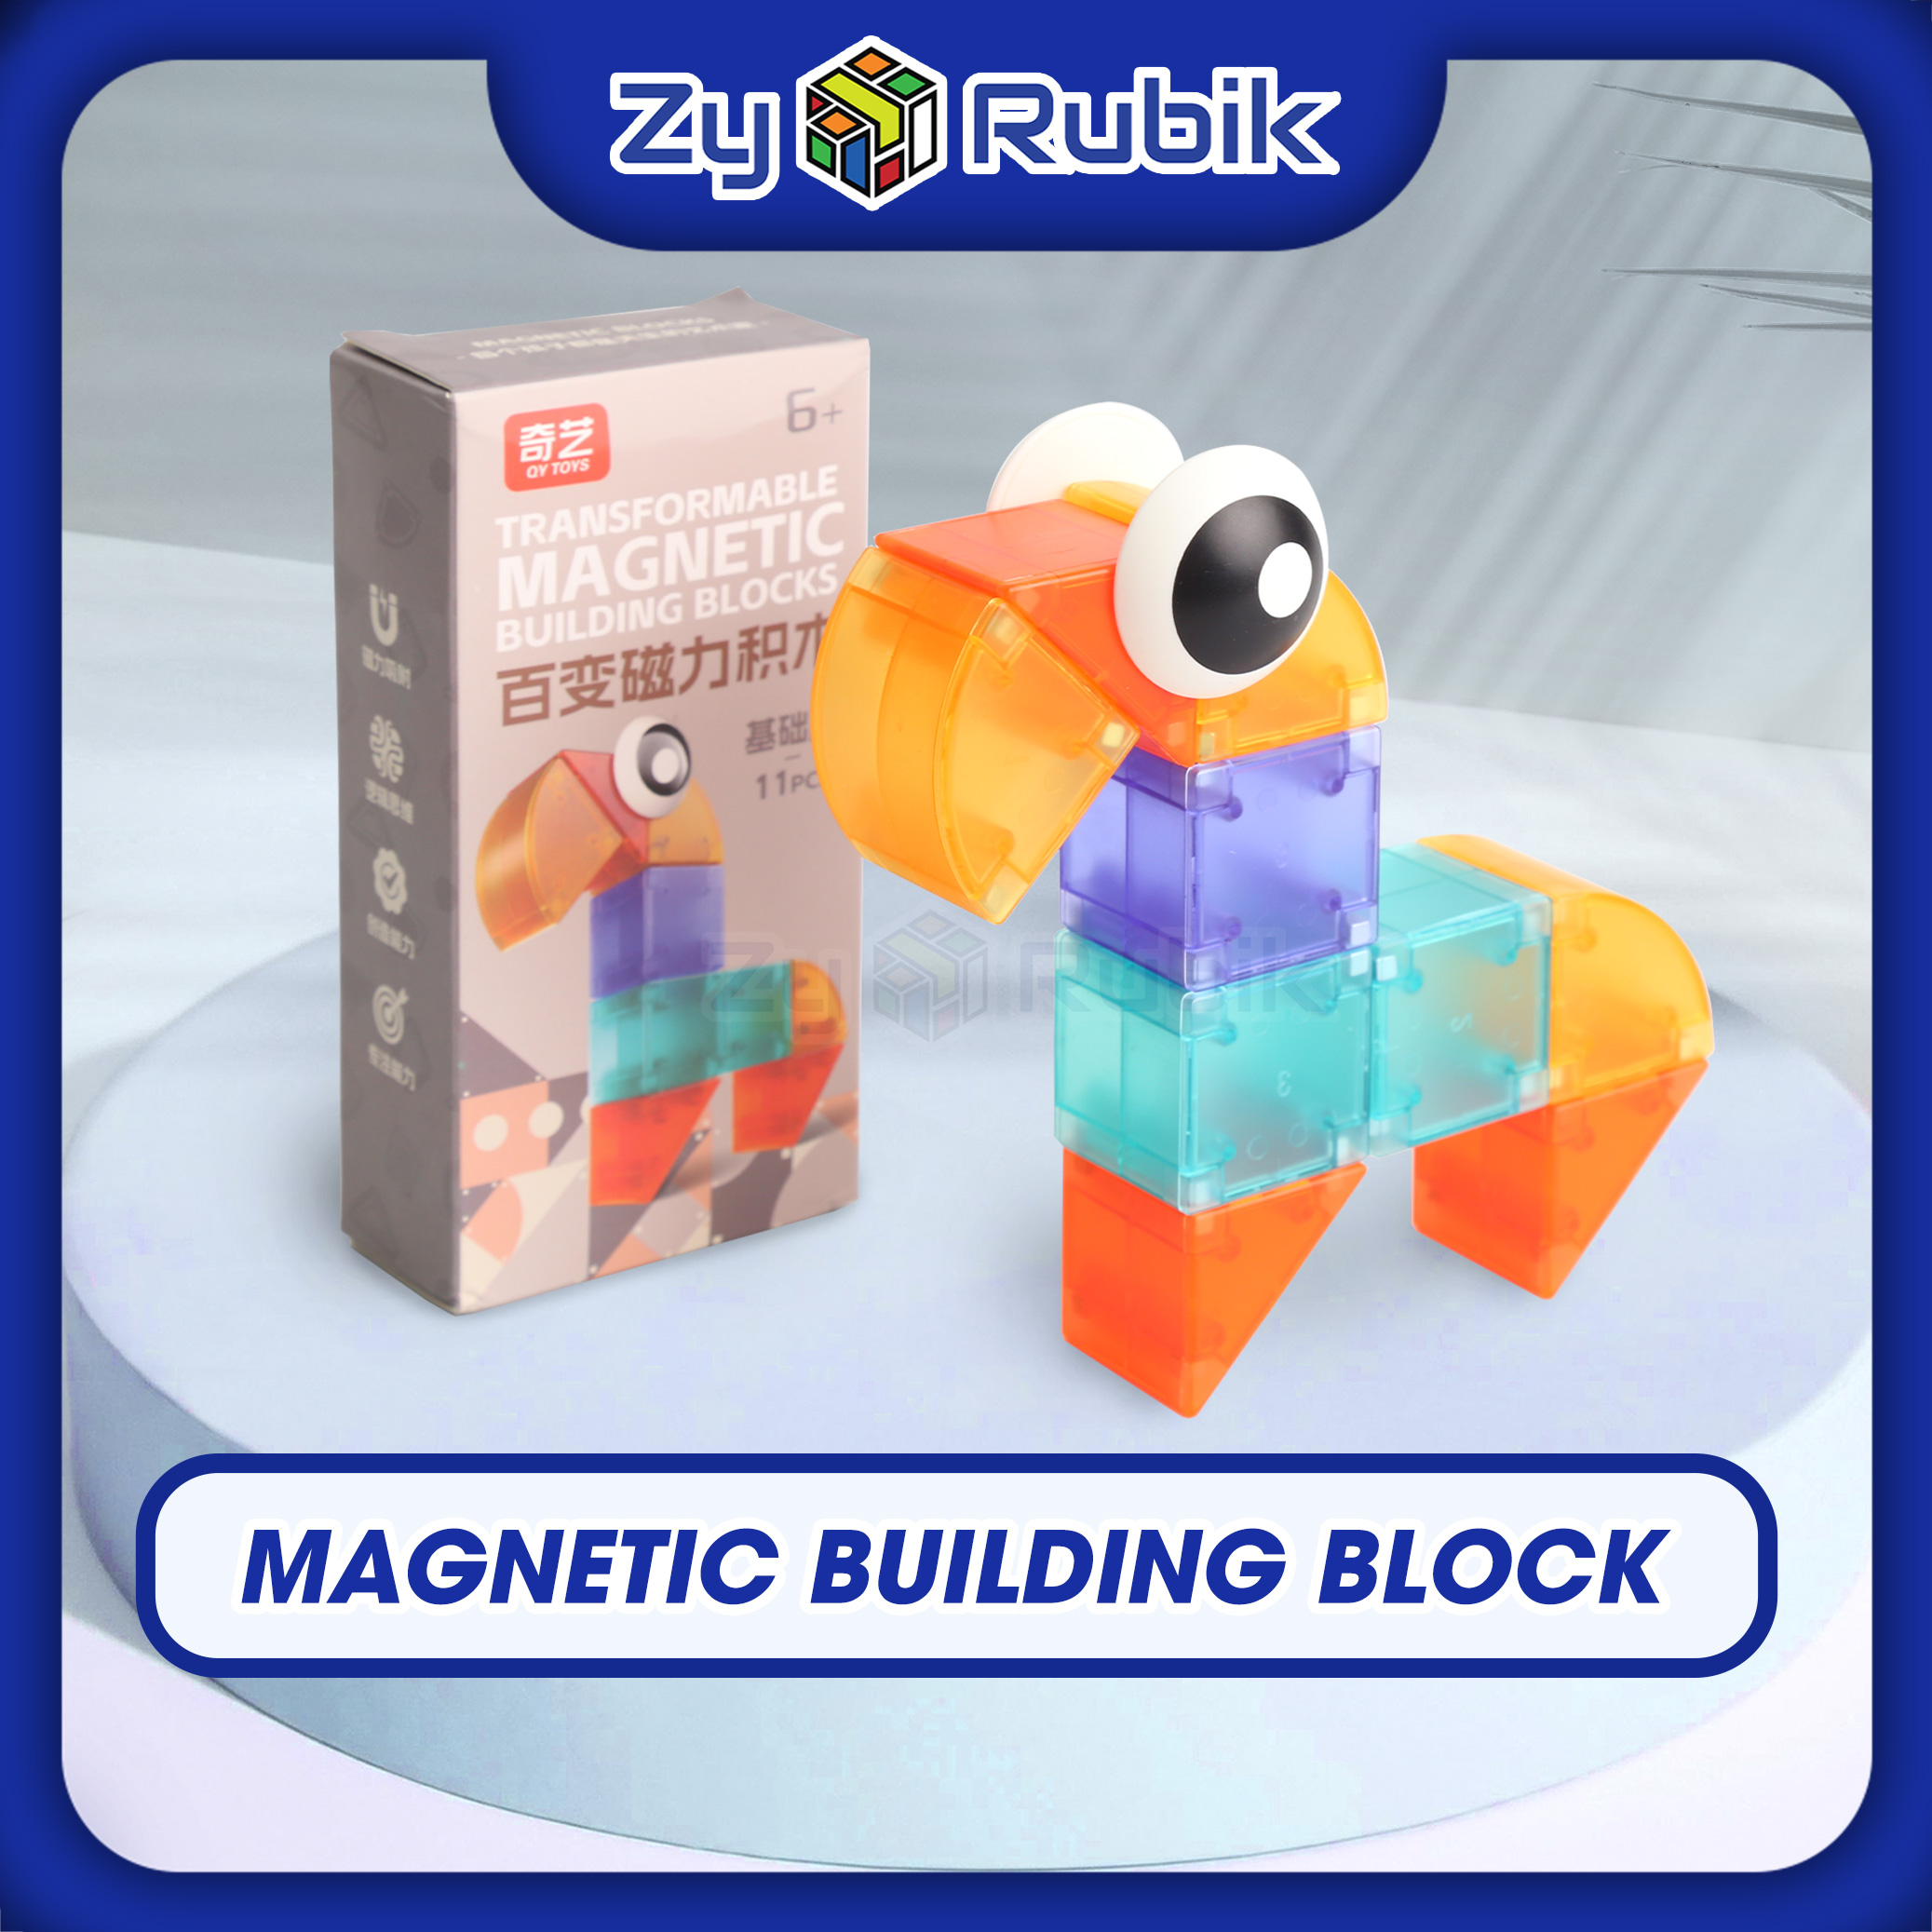 Đồ Chơi Trí Tuệ Transformable Magnetic Building Blocks